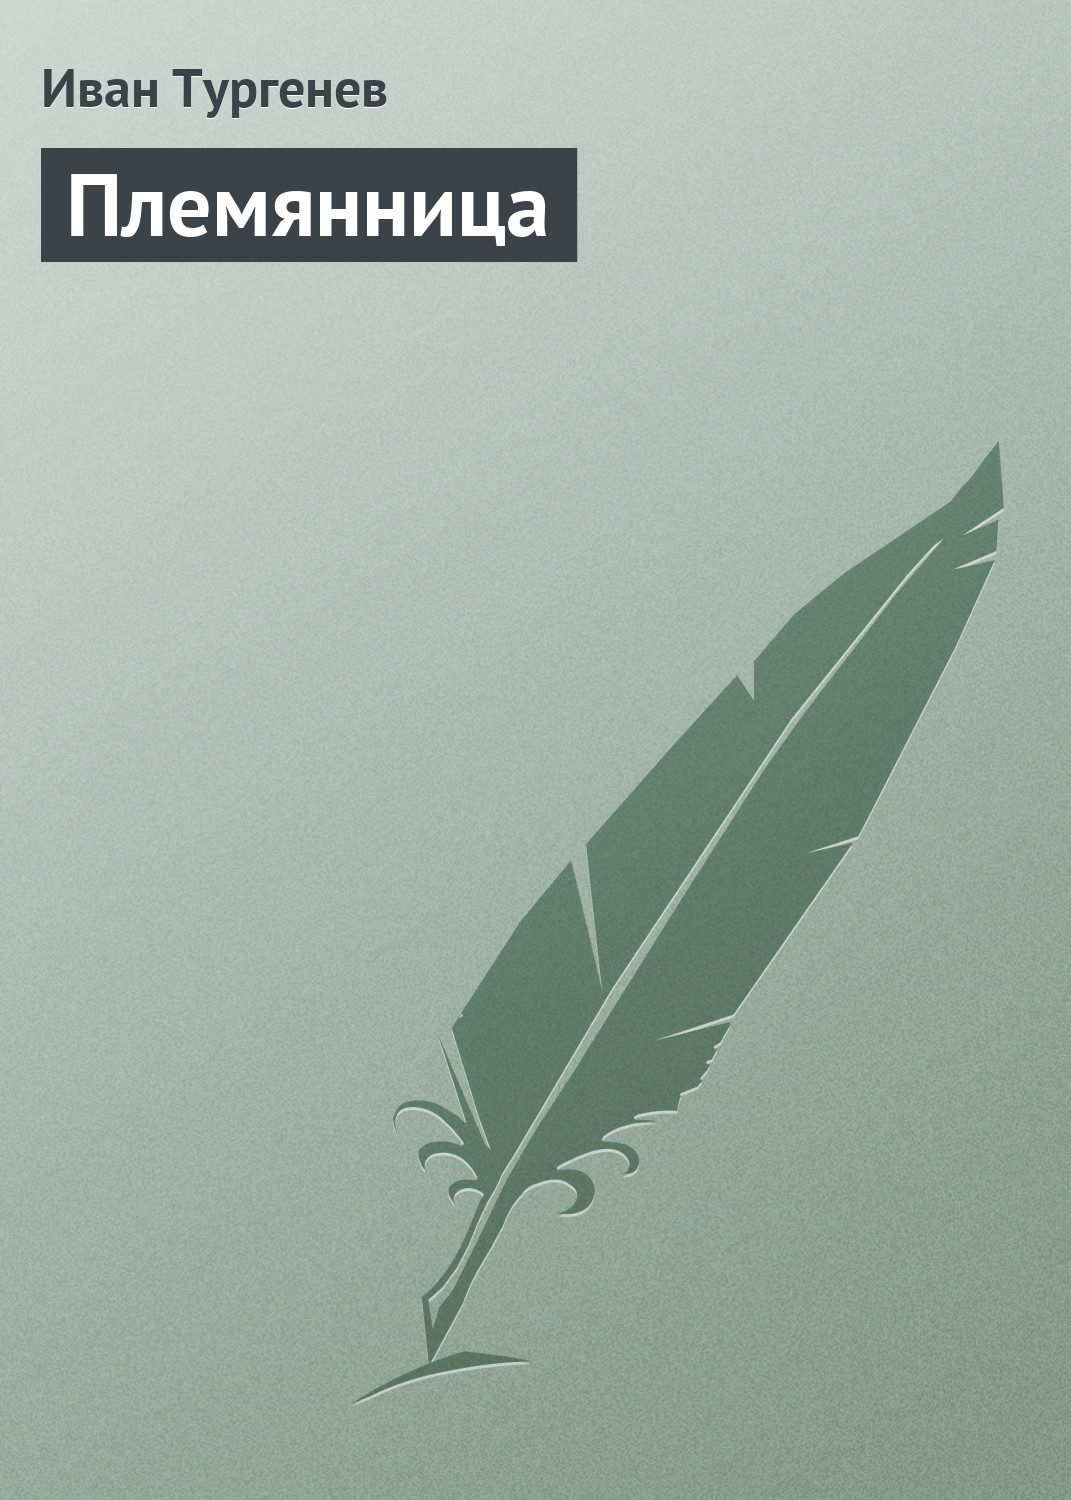 Книга Племянница из серии , созданная Иван Тургенев, может относится к жанру Критика. Стоимость книги Племянница  с идентификатором 2997855 составляет 19.99 руб.